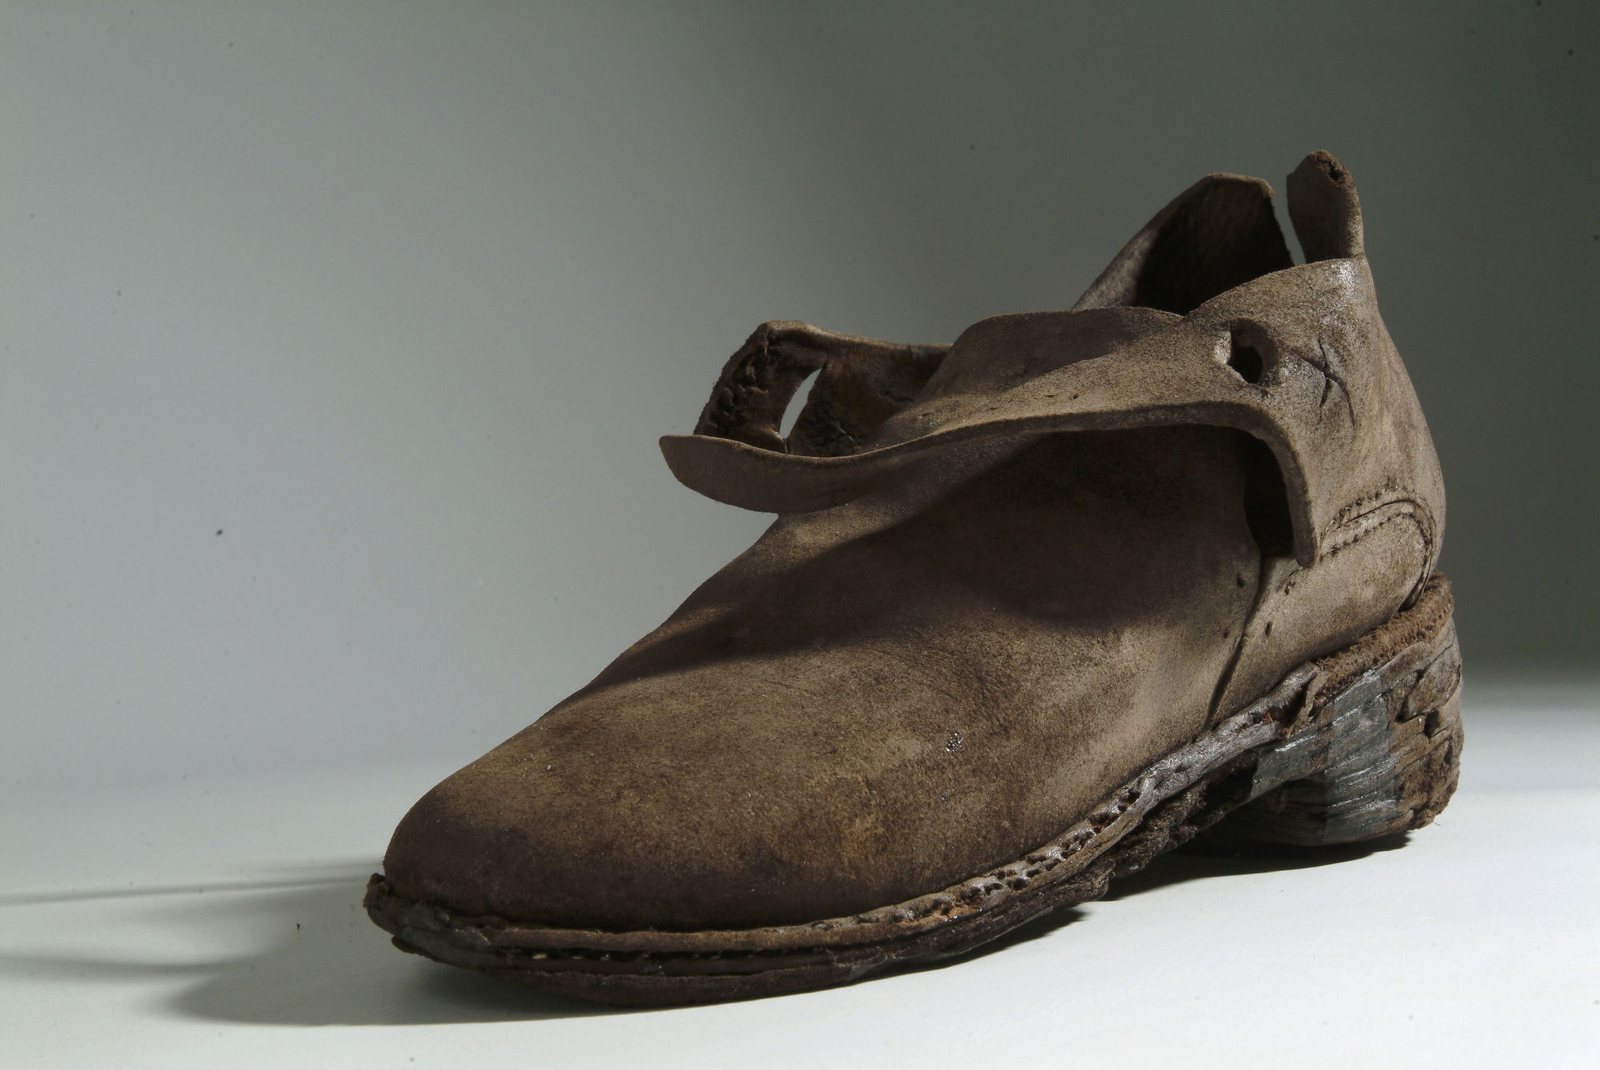 Photographie d'une chaussure en cuir découverte sur l'épave de la frégate la Dauphine après traitement